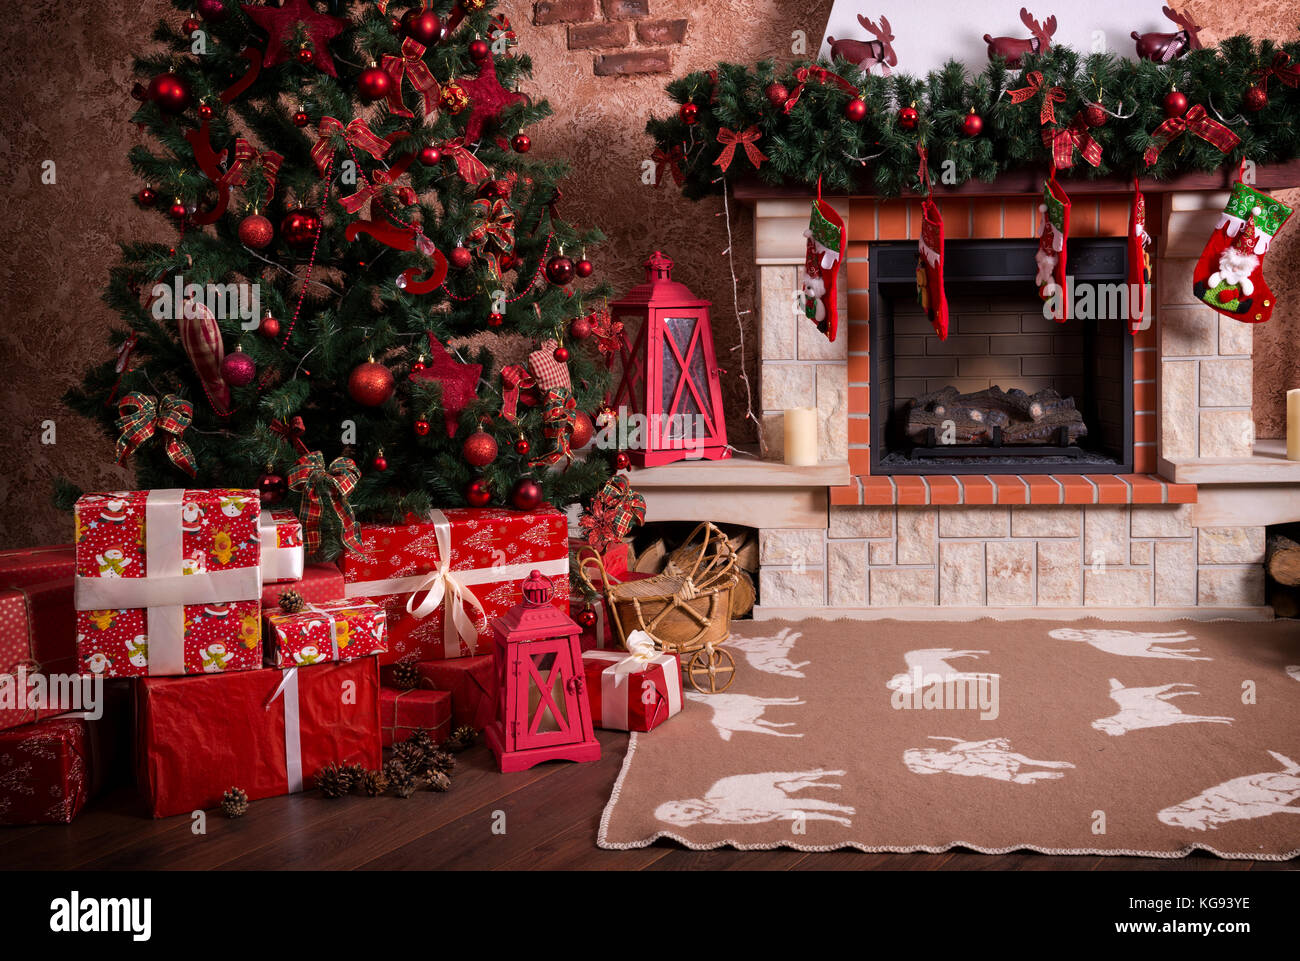 Viele Kartons mit Weihnachten Geschenke unter dem Weihnachtsbaum in der Nähe der Feuerstelle. Stockfoto